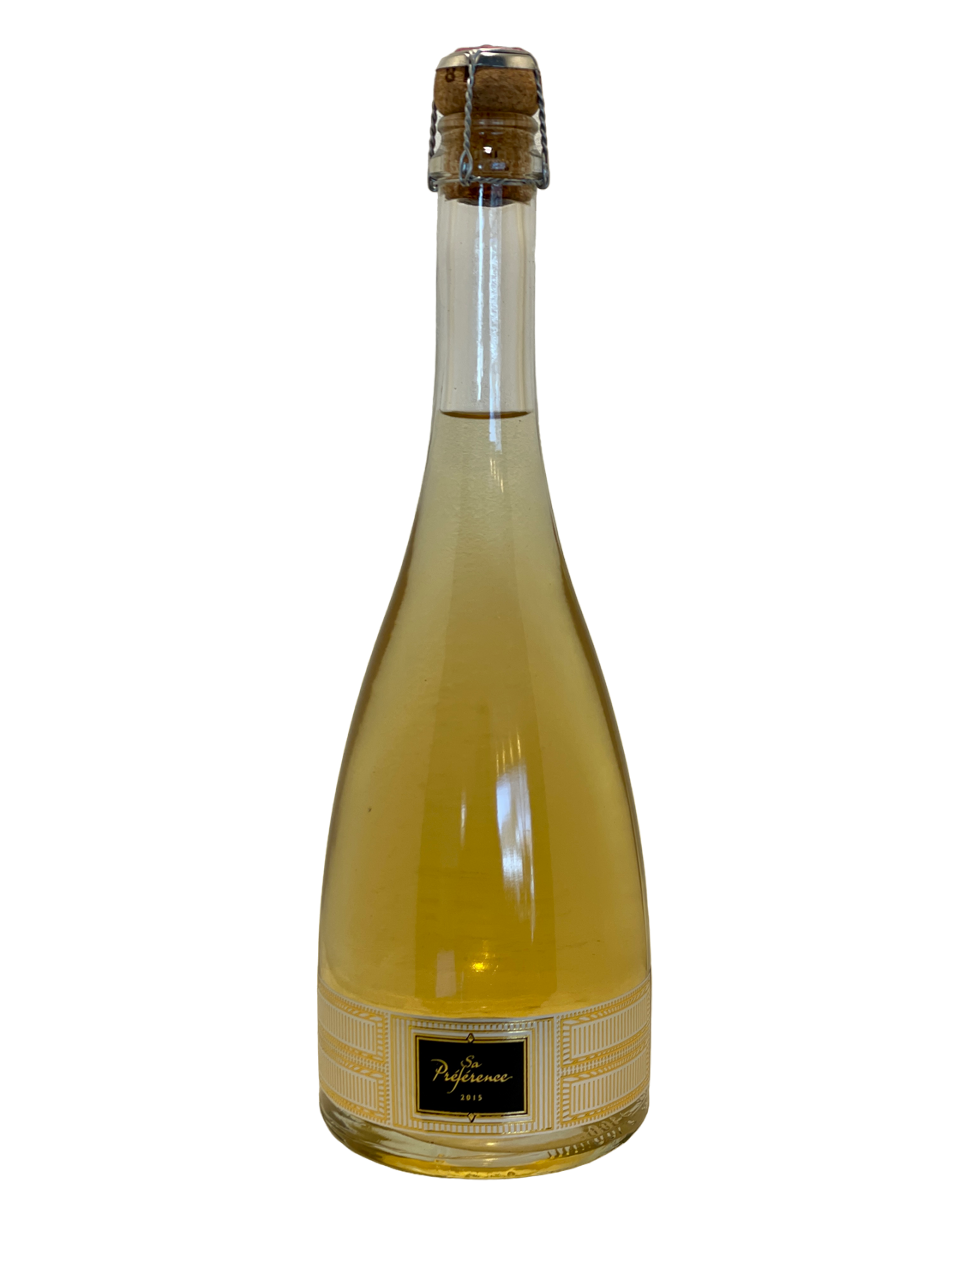 languedoc roussillon wine vin organic biodynamie rivesaltes mas delmas vin mousseux sa préférence blanc